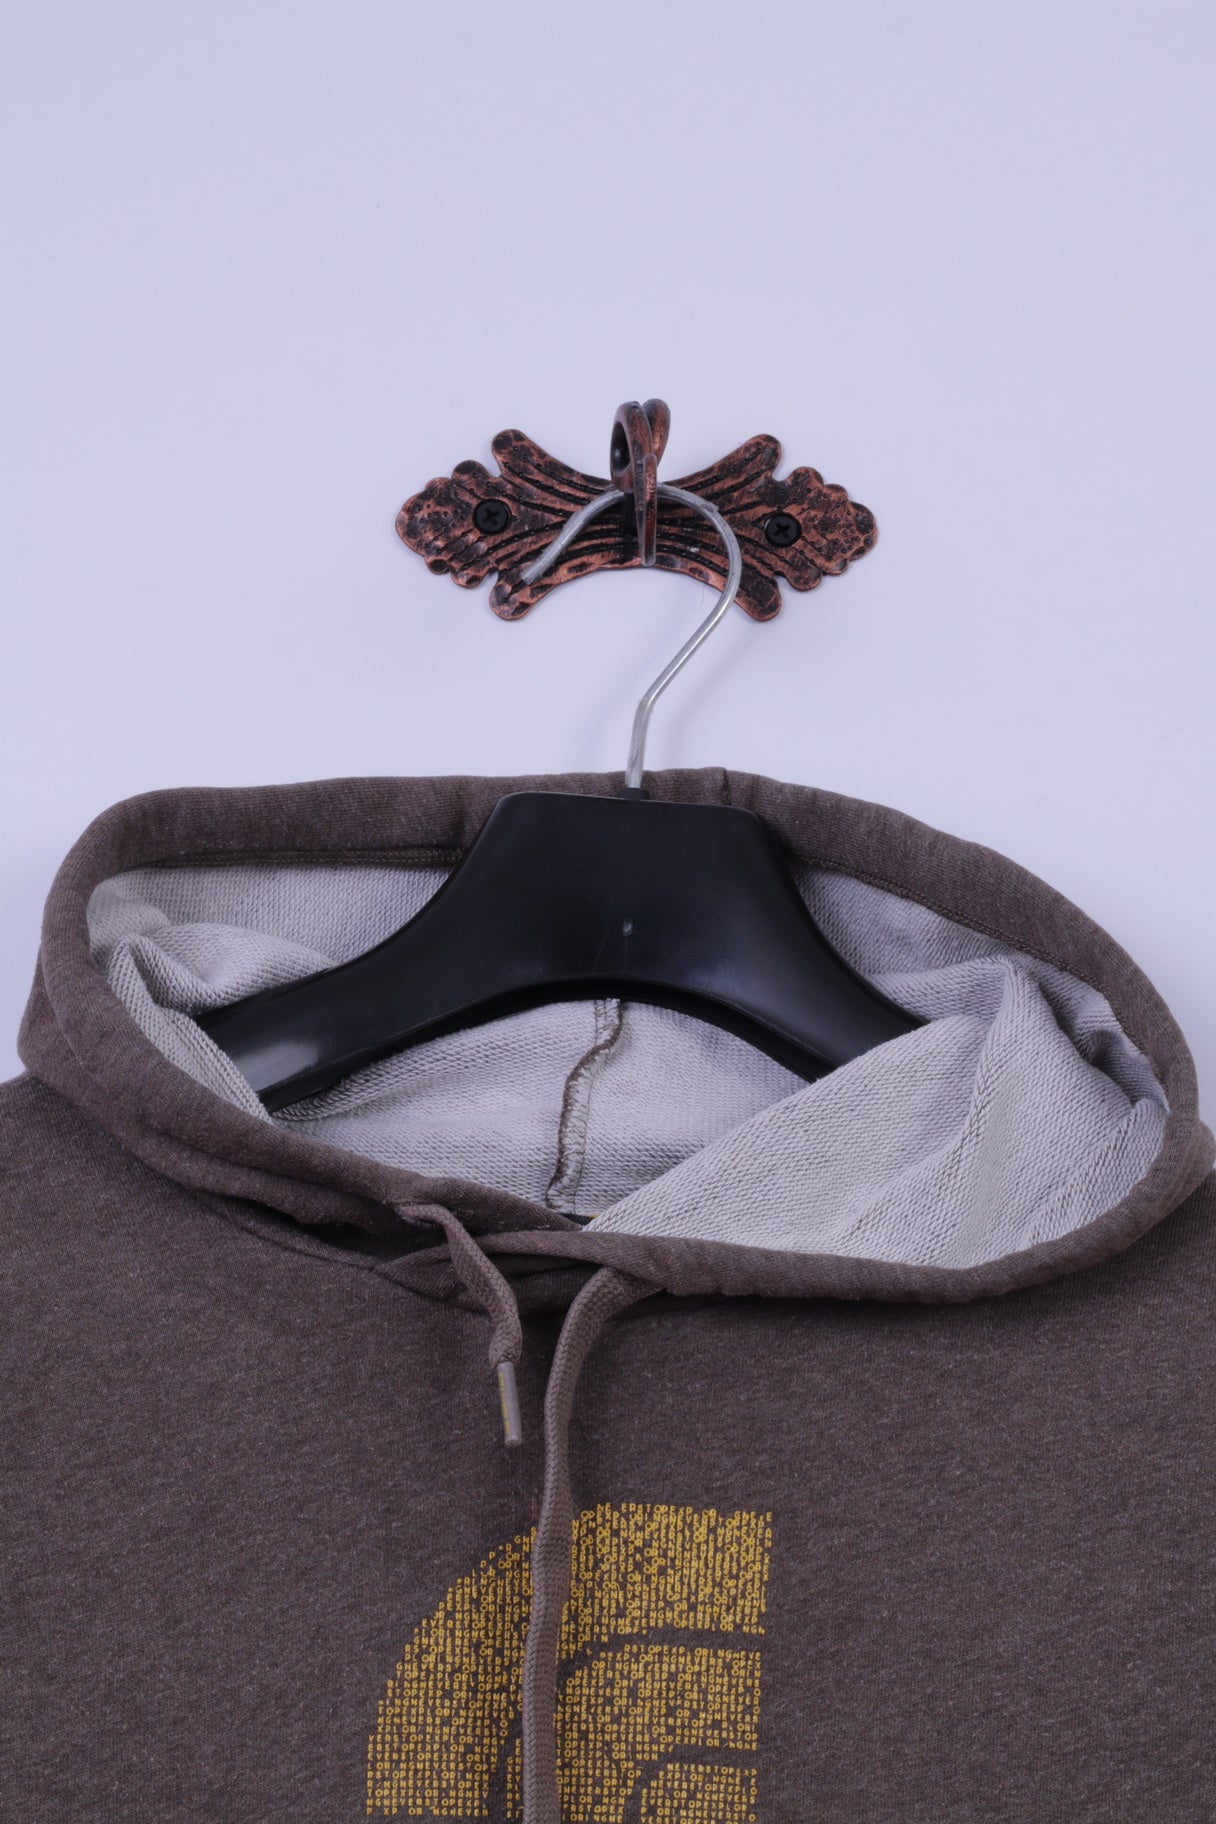 The North Face Sweat à capuche XS pour homme en coton marron avec logo graphique avec poche kangourou